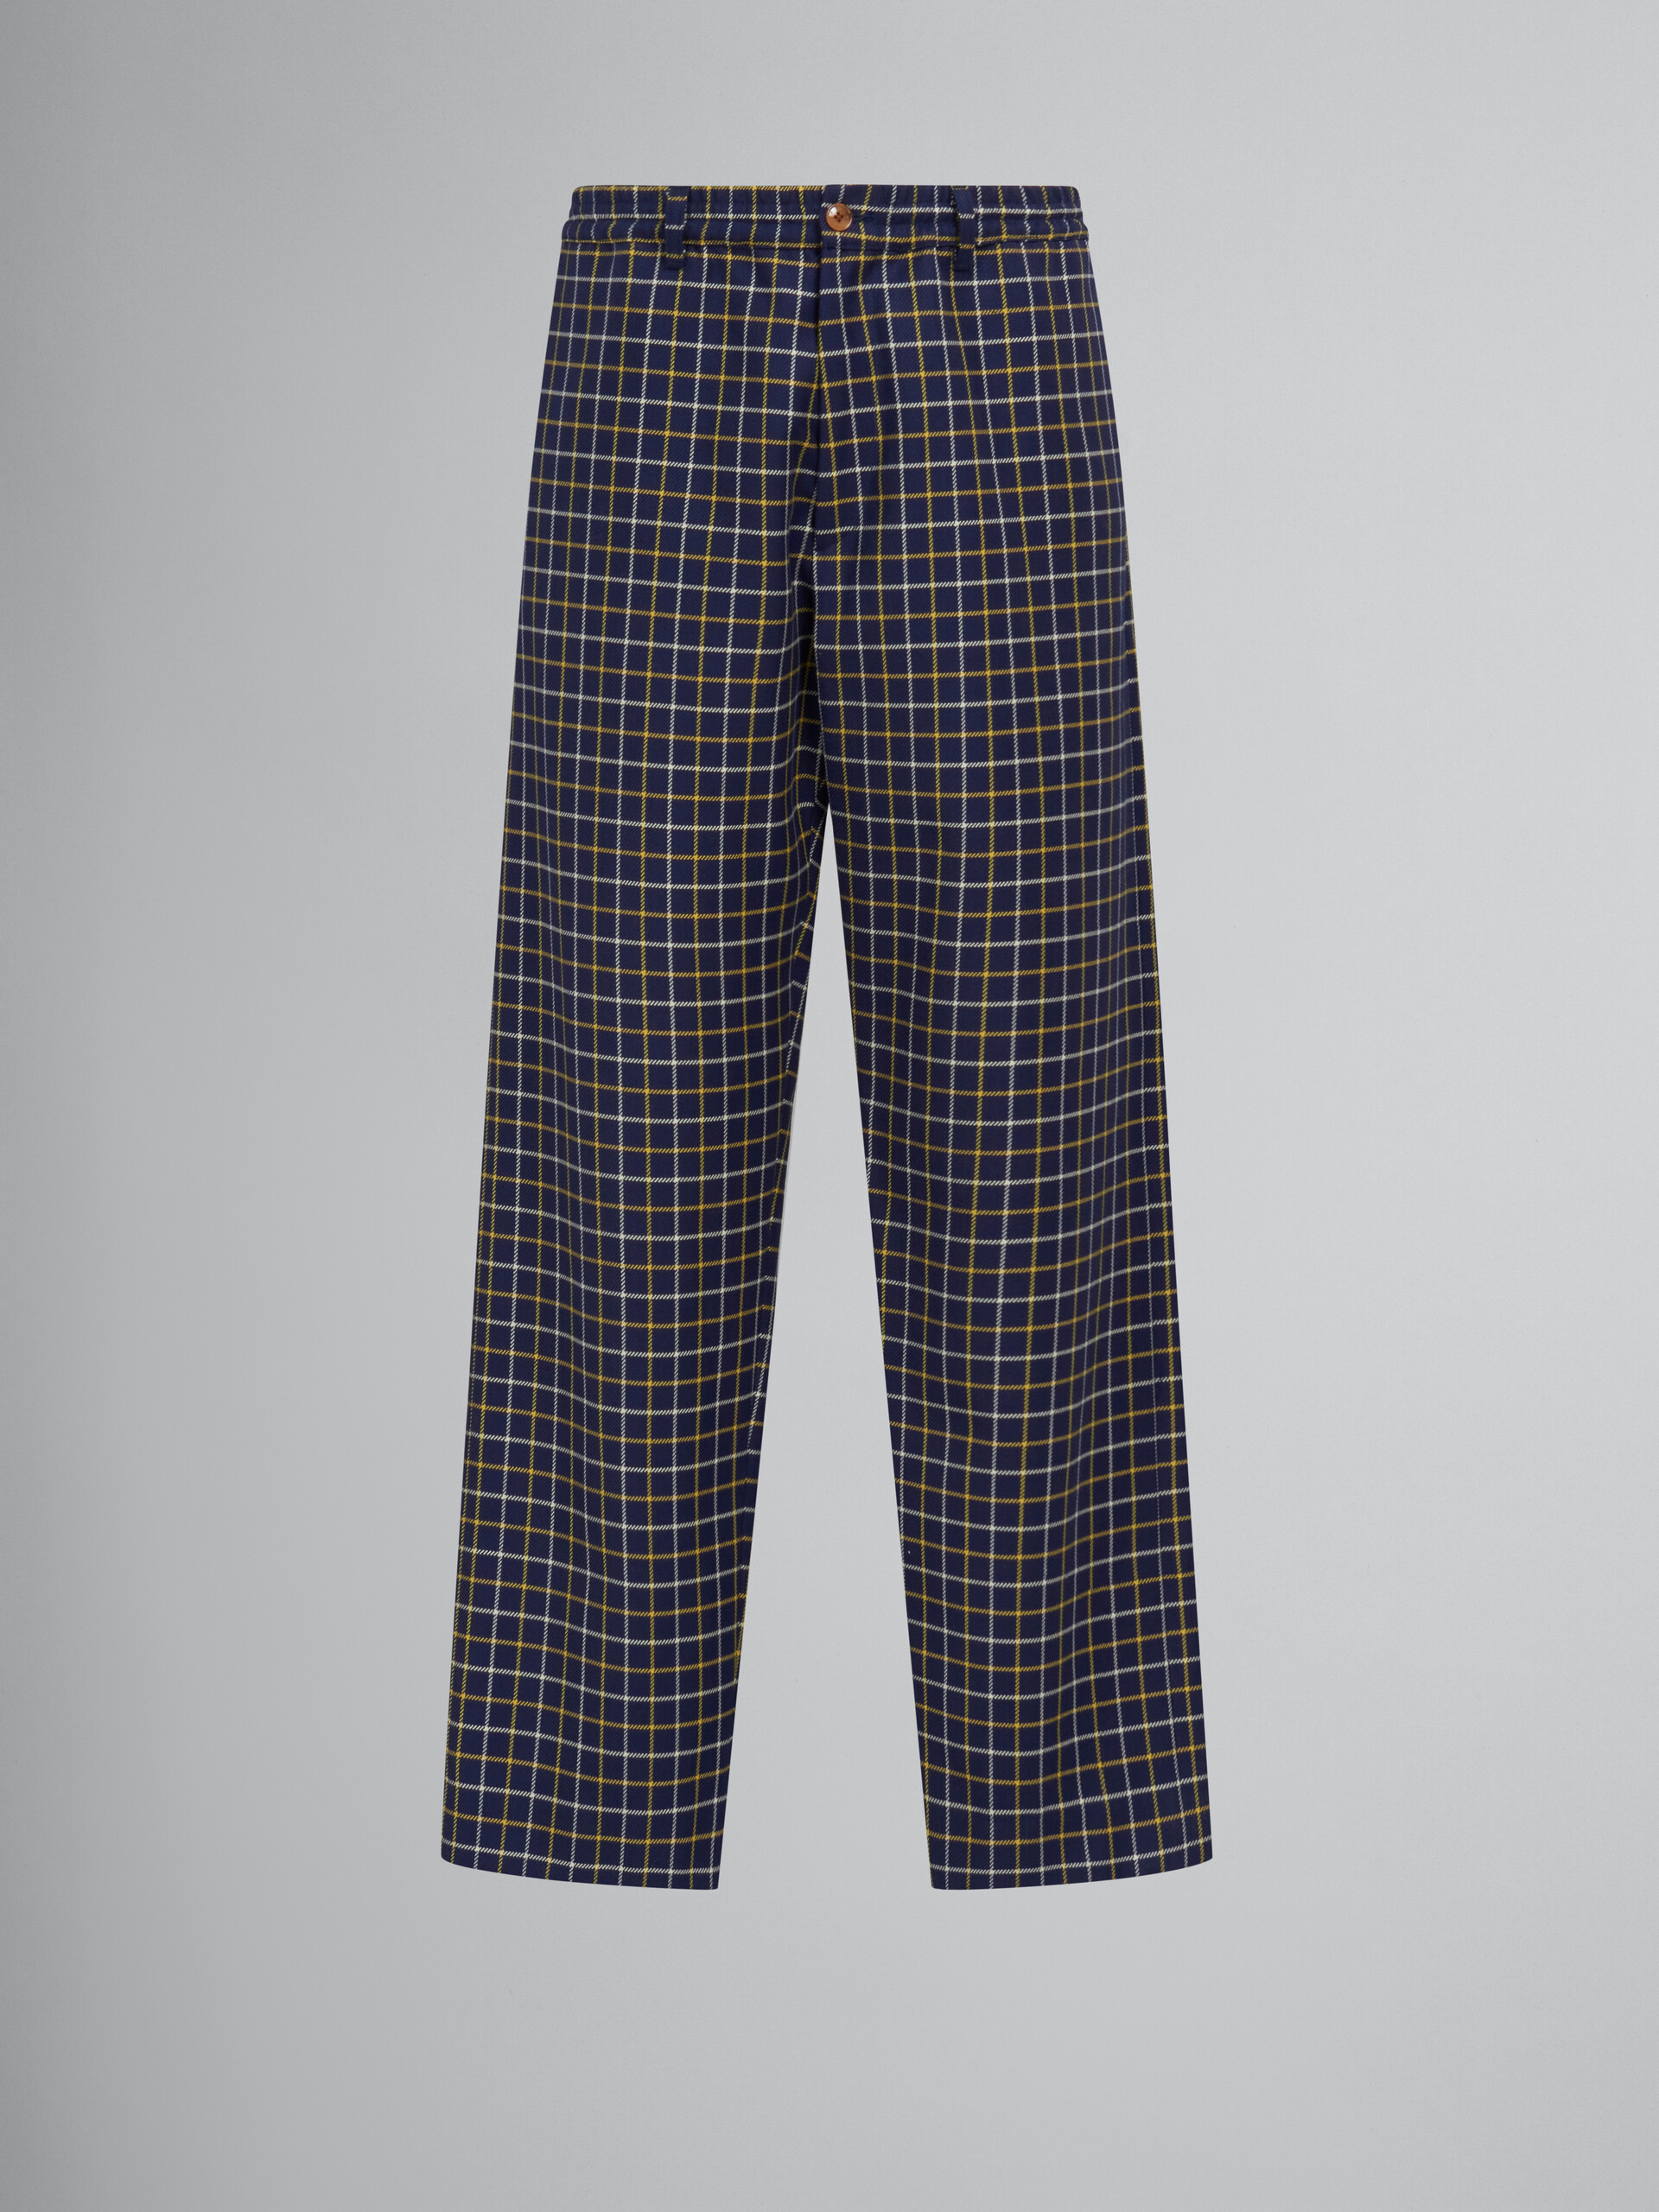 Pantalón de jogging de algodón y lana azul a cuadros - Pantalones - Image 1